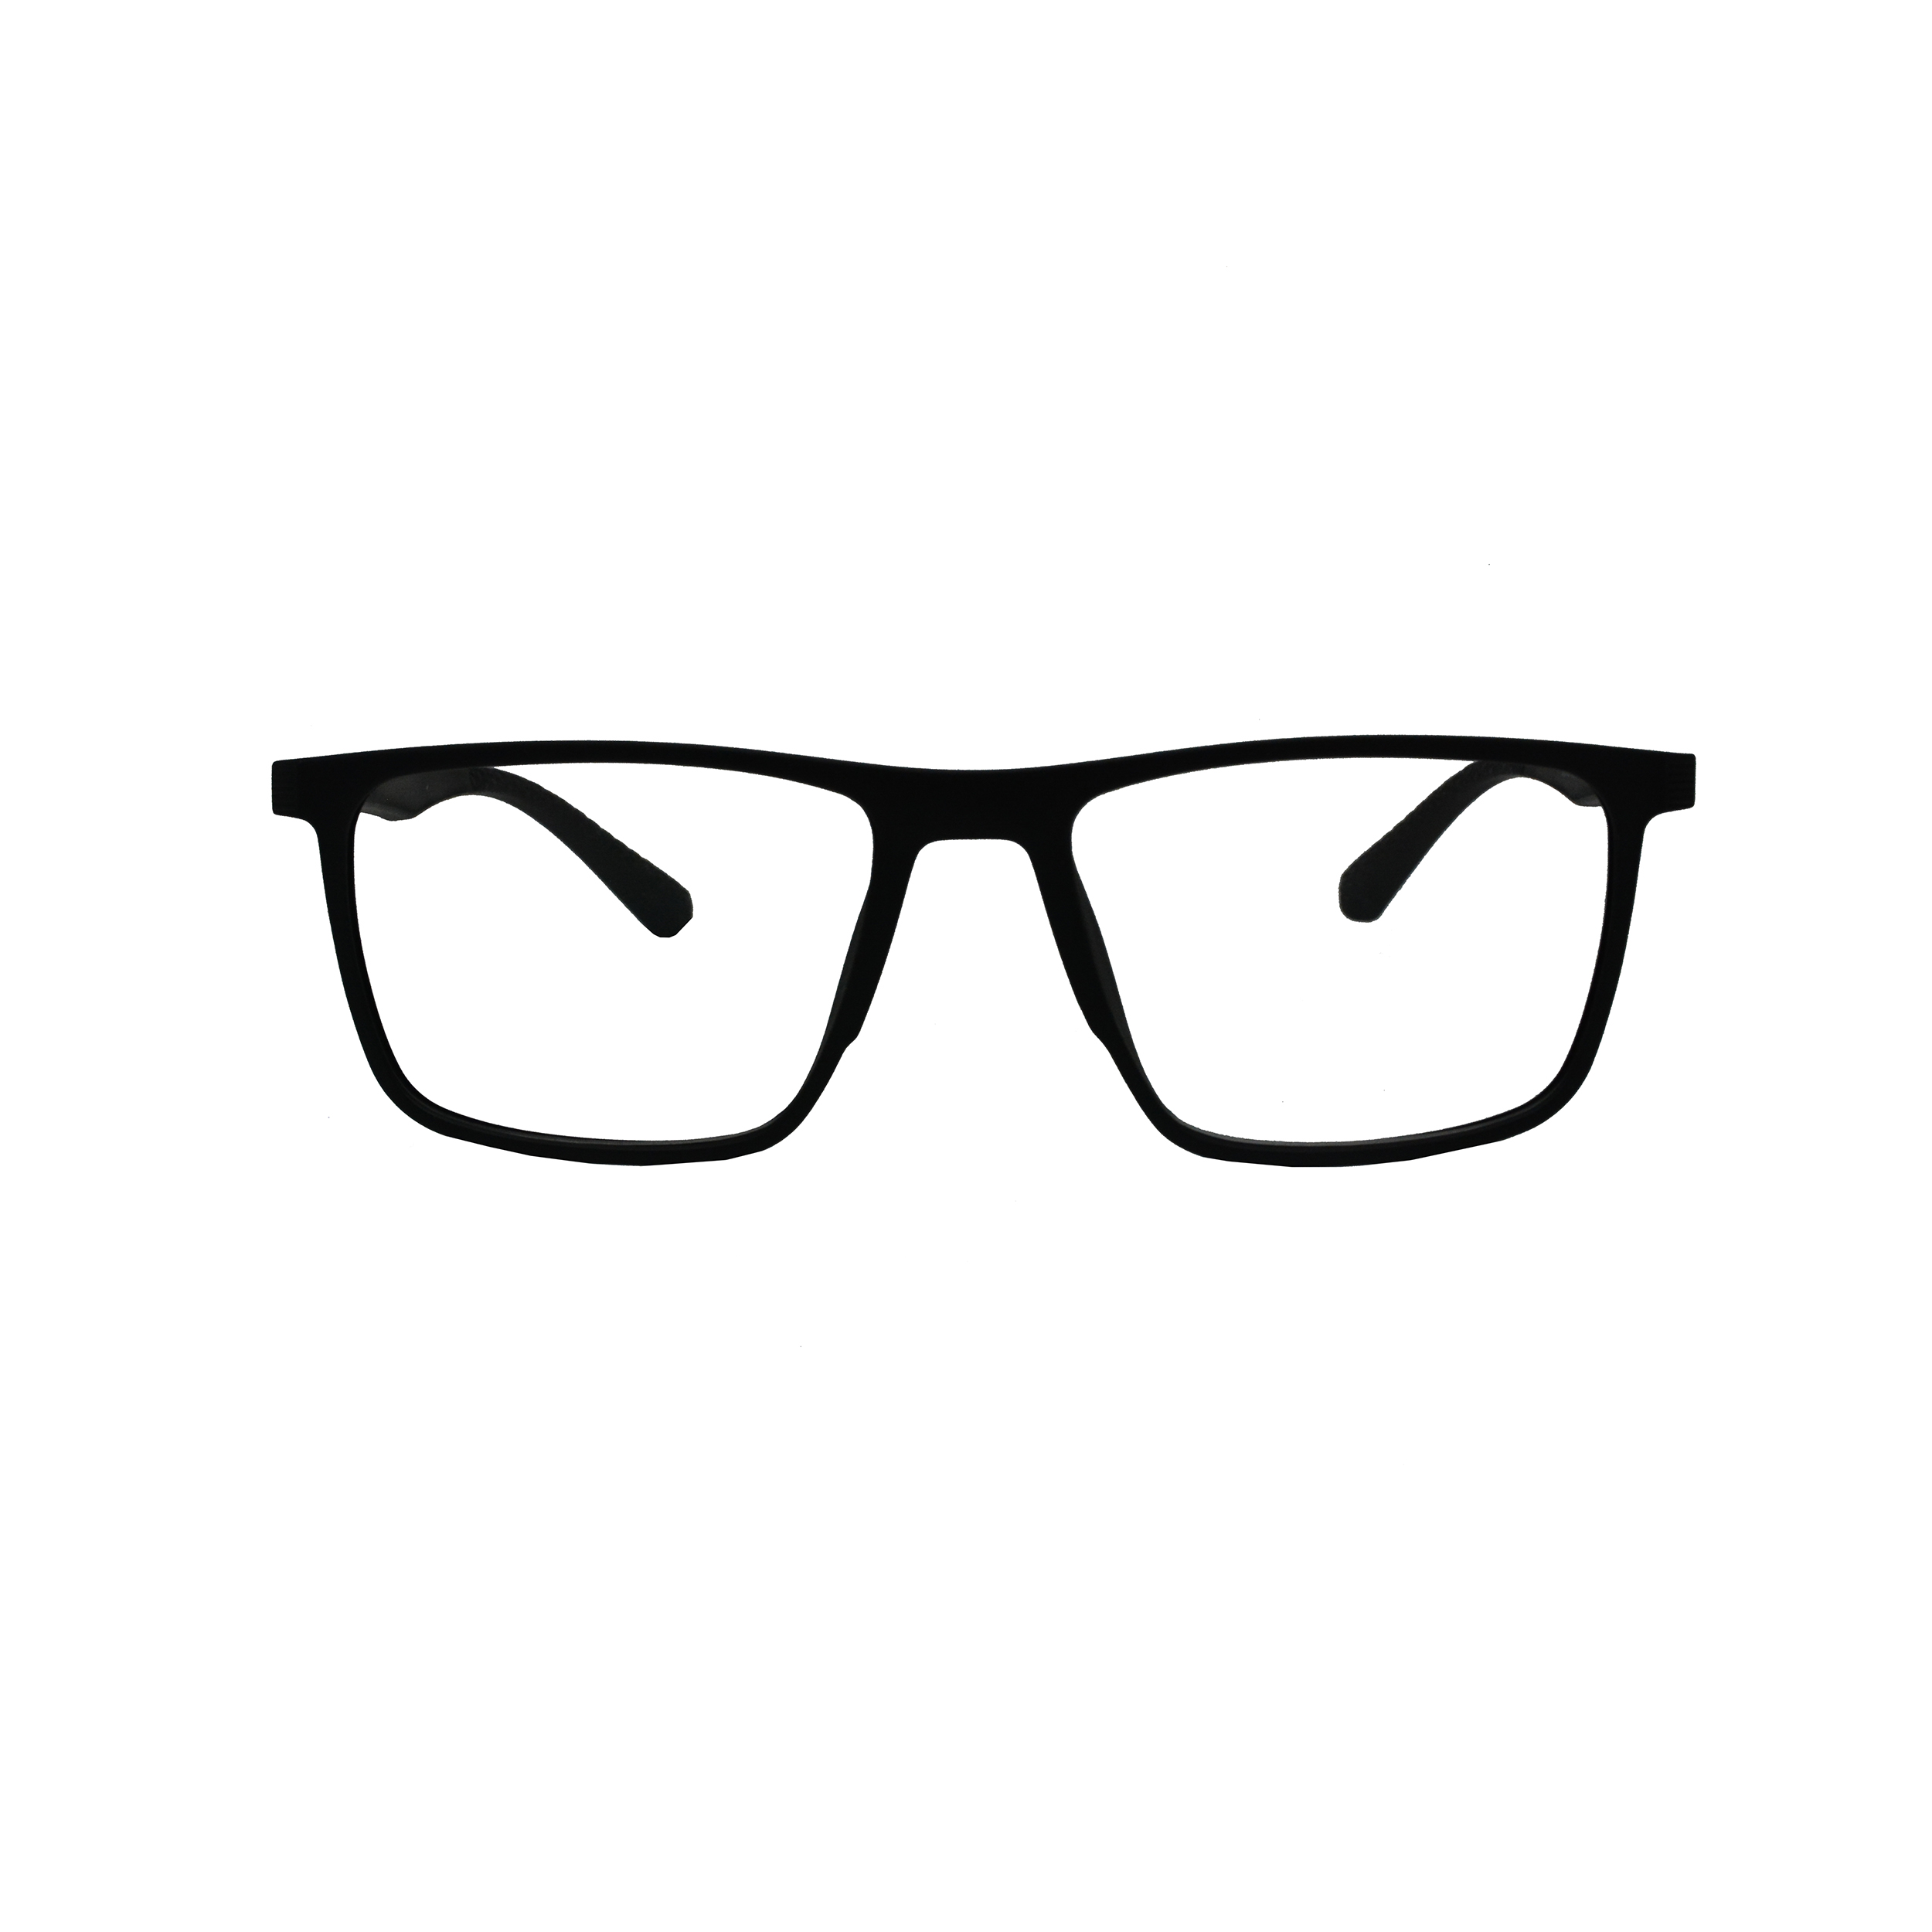 نکته خرید - قیمت روز فریم عینک طبی مدل 2019 5217142 C1 خرید